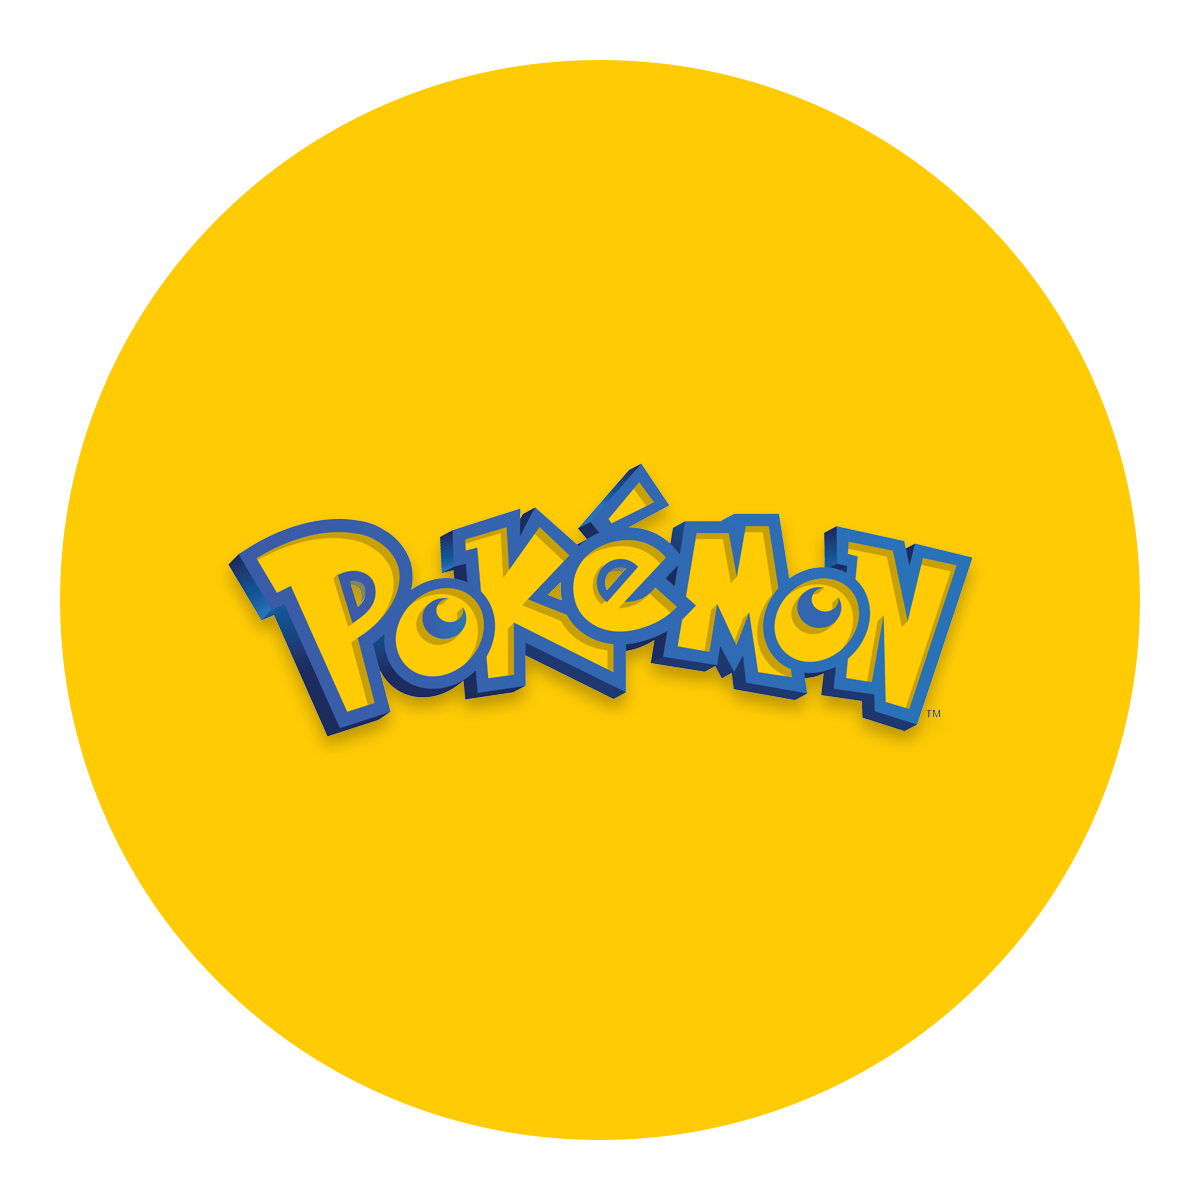 Pokédex, Pokémon S.P.E.C.T.R.U.M. Wikia